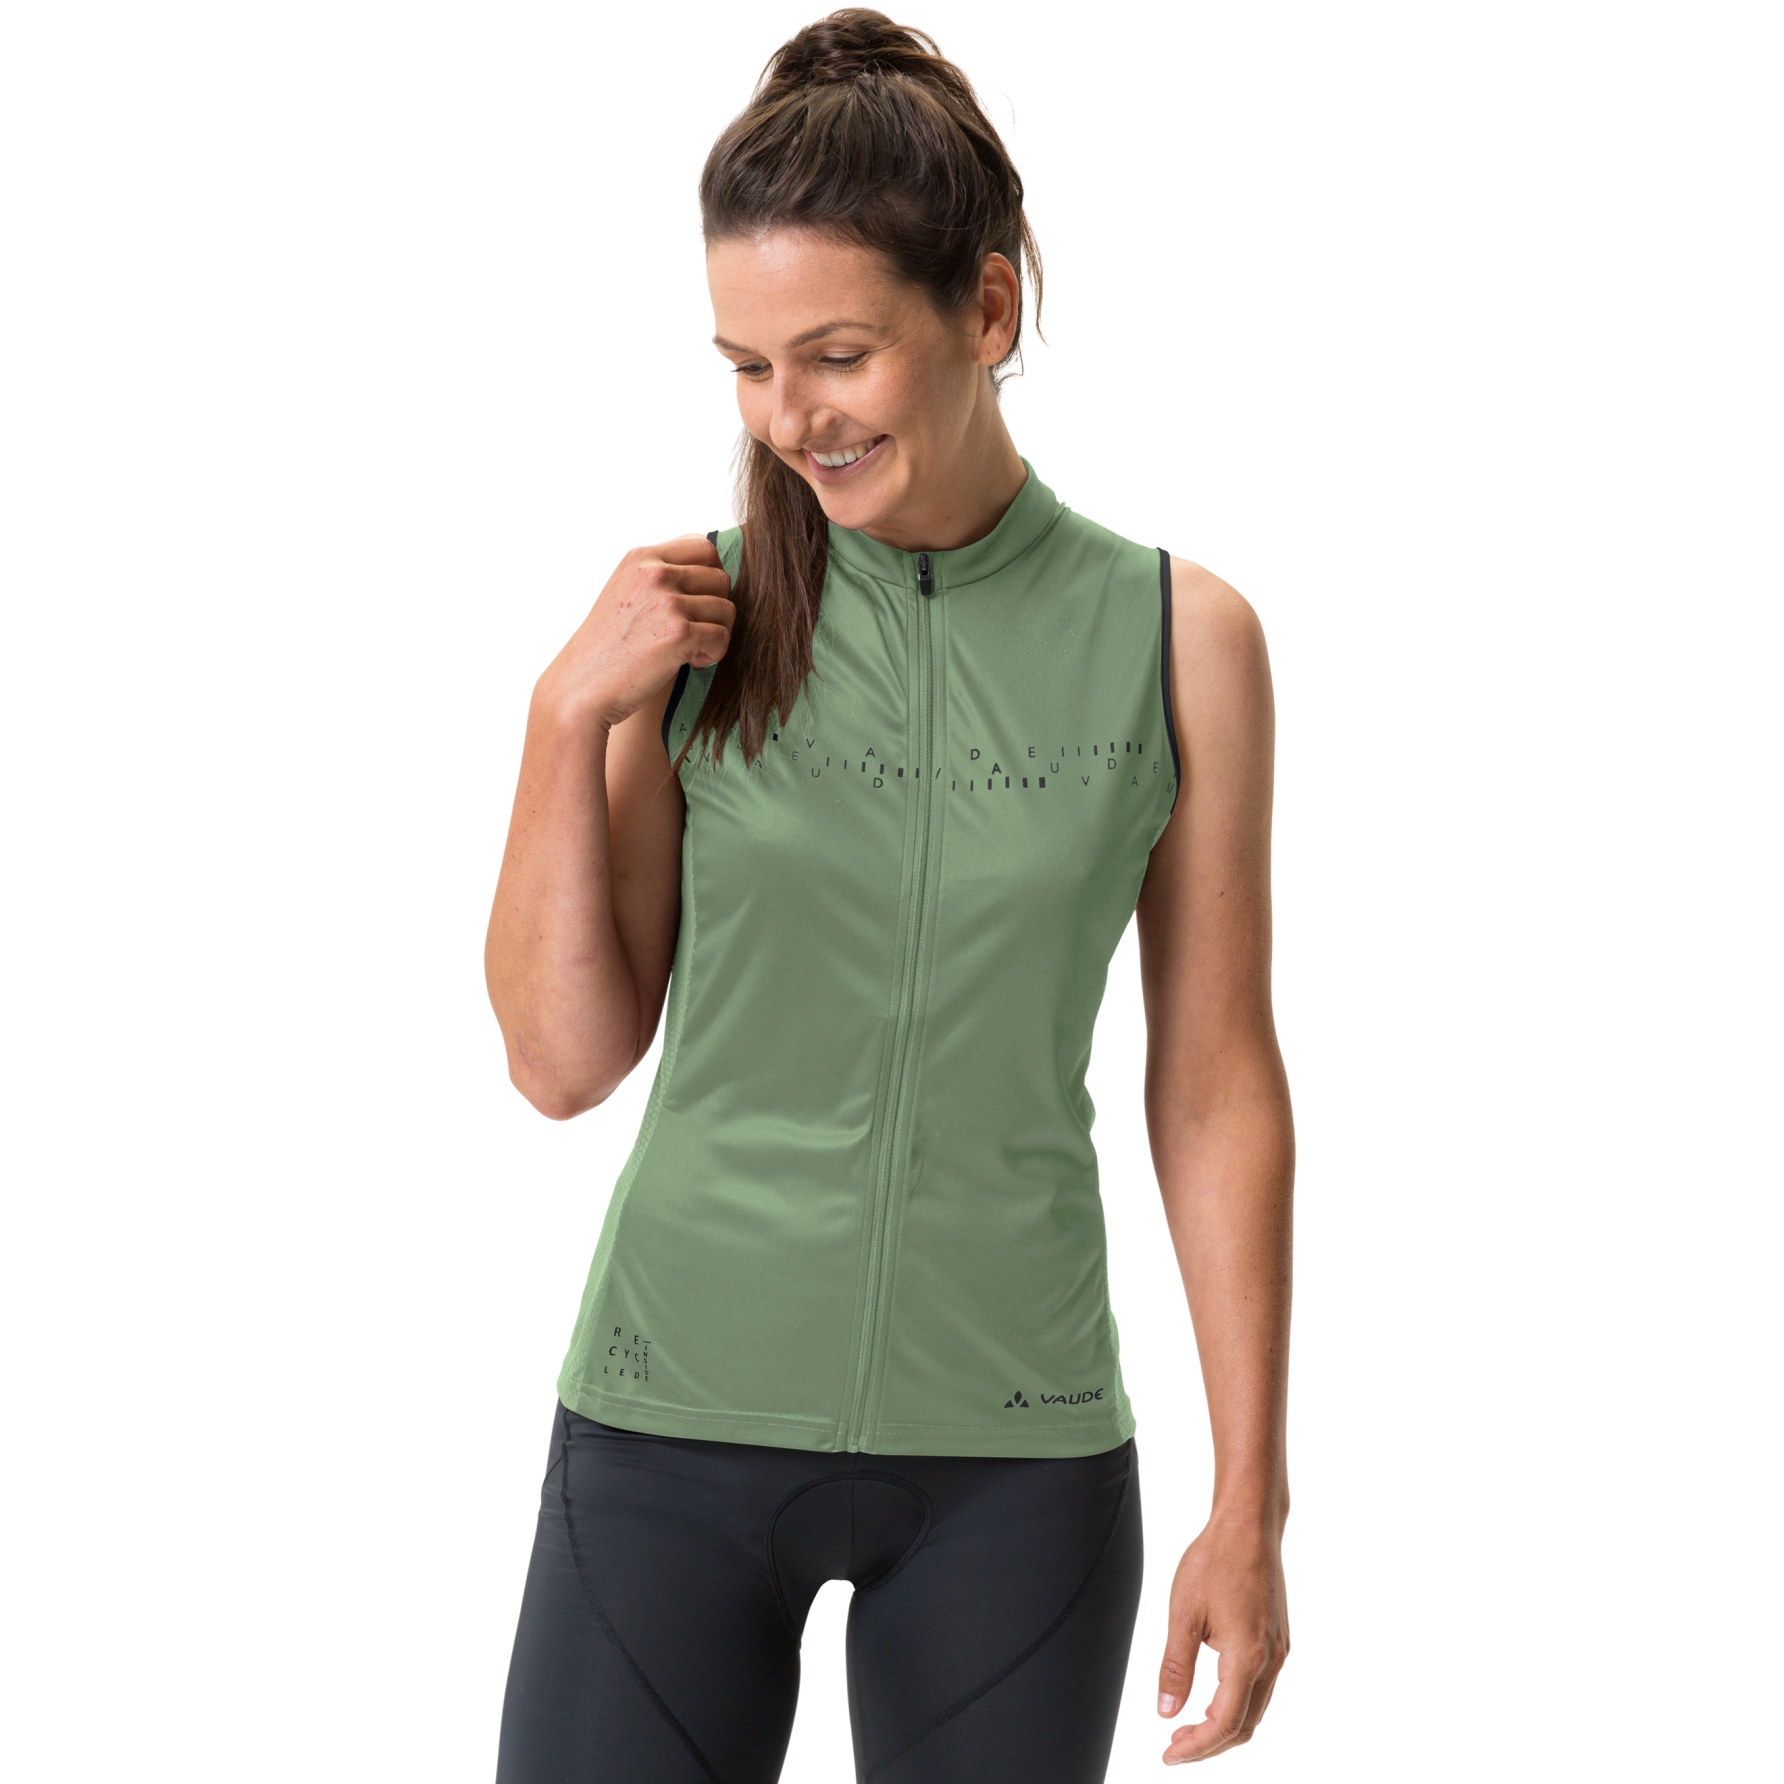 Productfoto van Vaude Posta Full Zip Shirt zonder Mouwen Dames - willow green